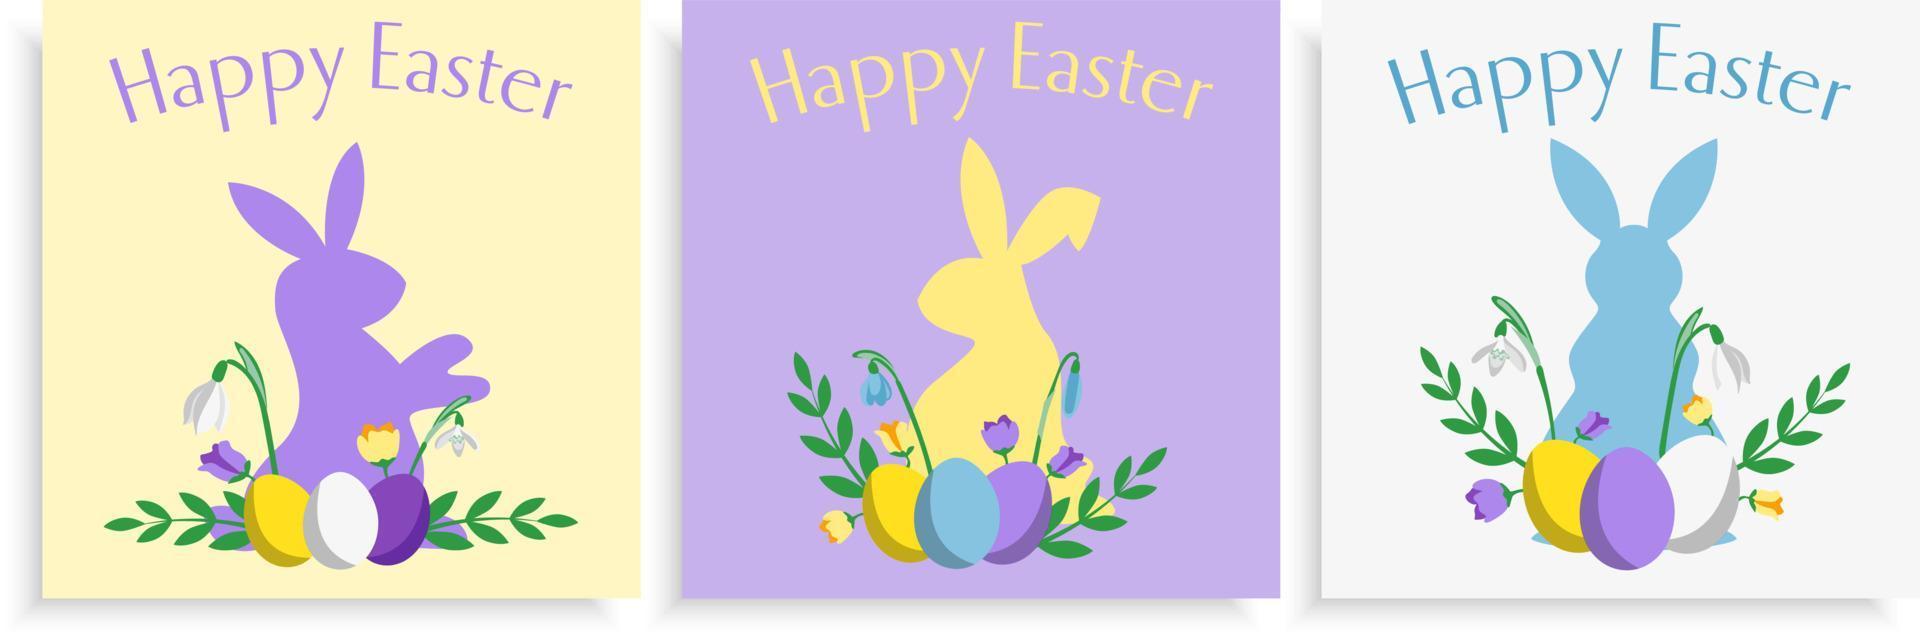 impostato di tre Pasqua carta design modelli con coniglietti e fiori piatto stile pastello colorato vettore